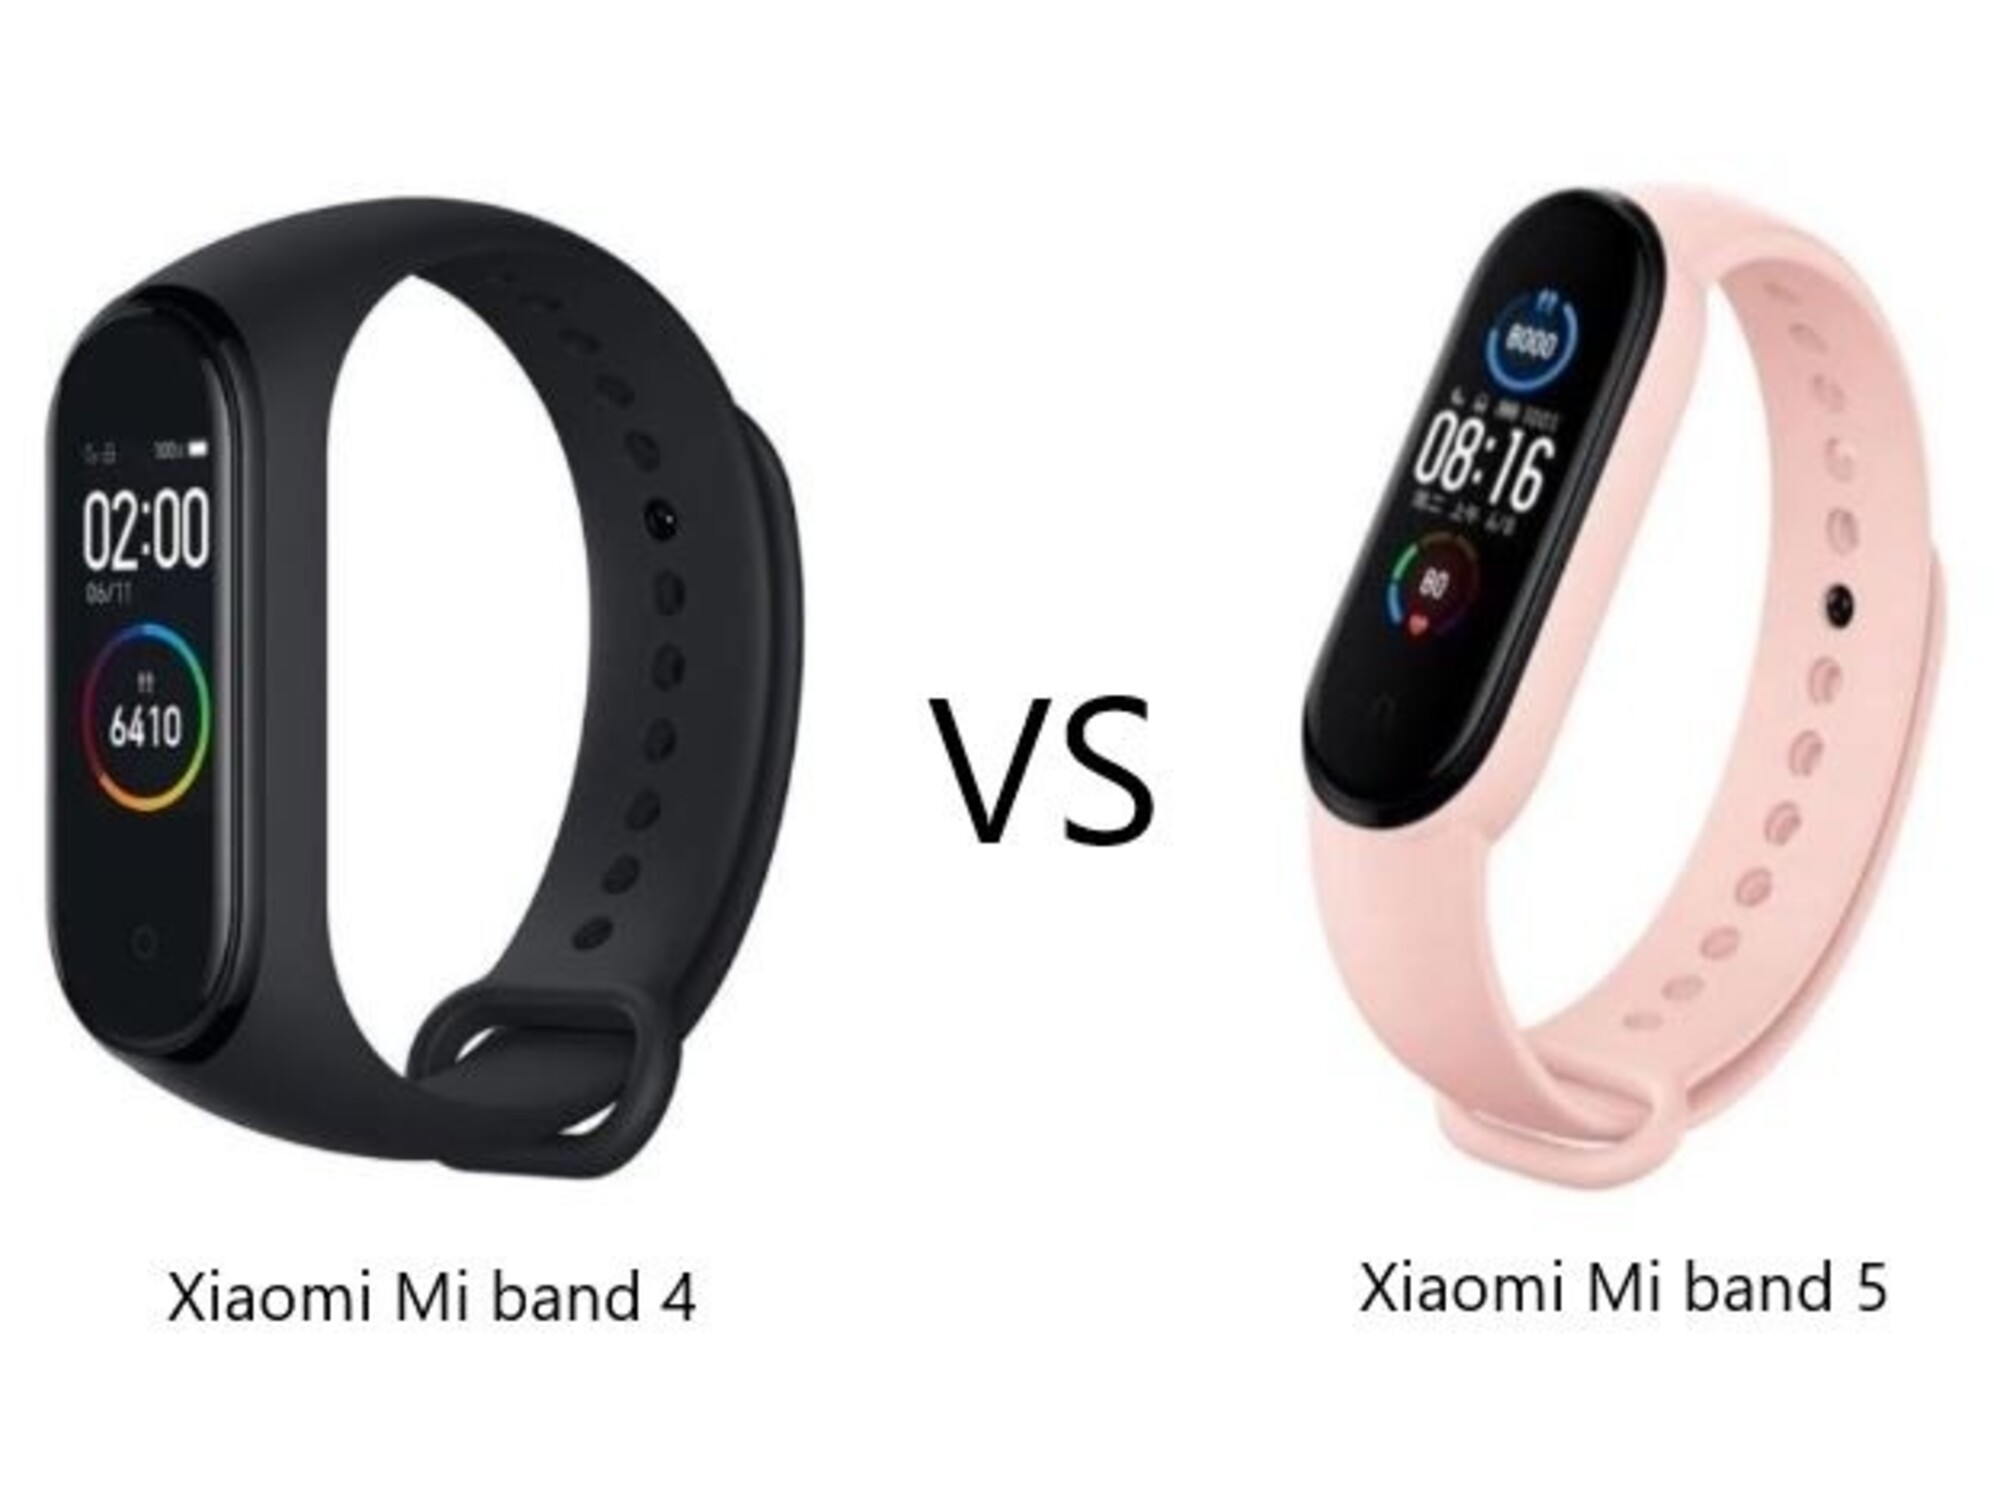 Nueva pulsera Xiaomi Band 5, ¿es mejor que la Honor 5, Huawei 4 o Fitbit HR?